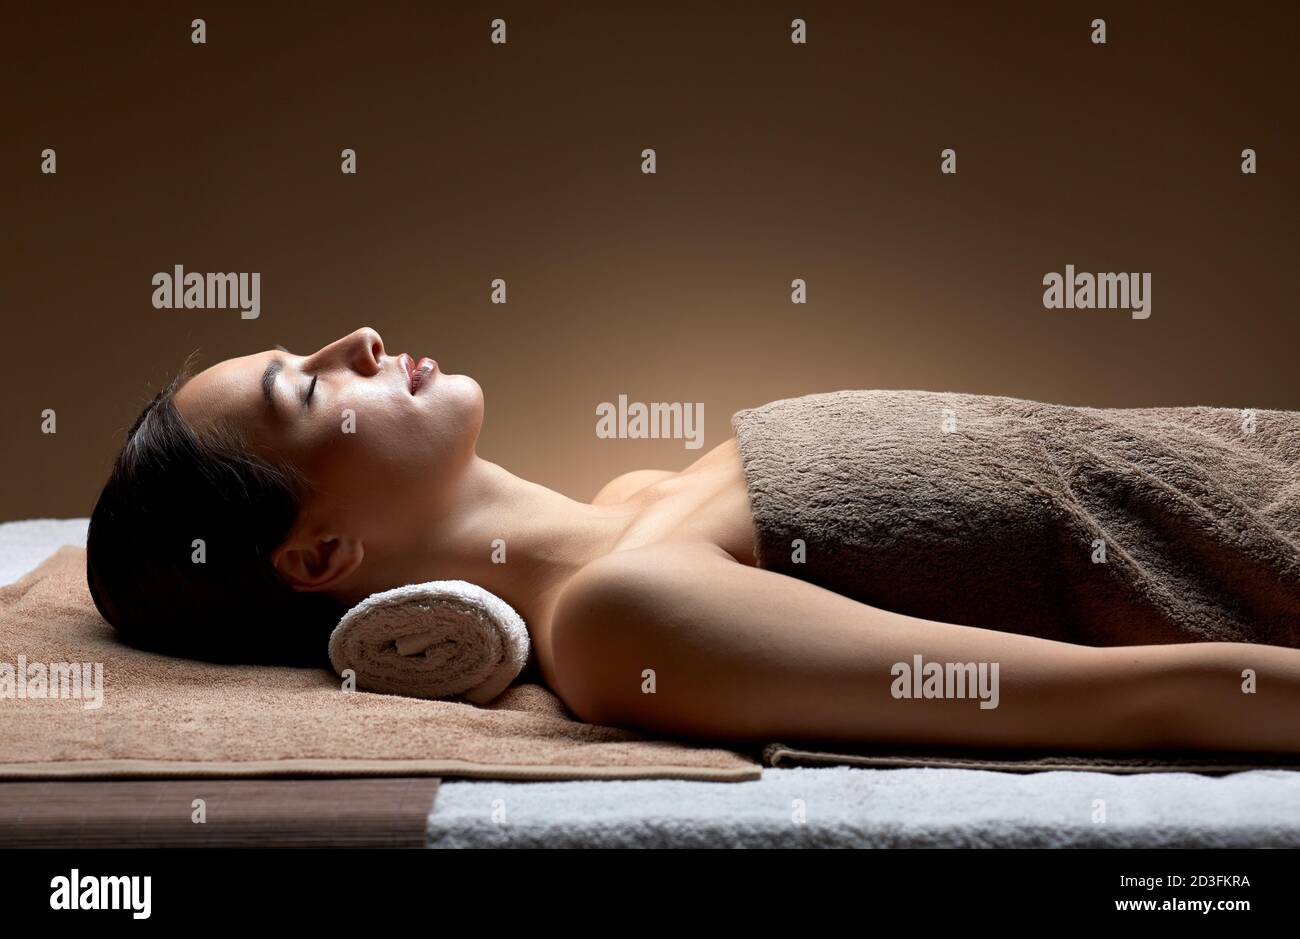 Jeune femme couchée au spa ou salon de massage Banque D'Images